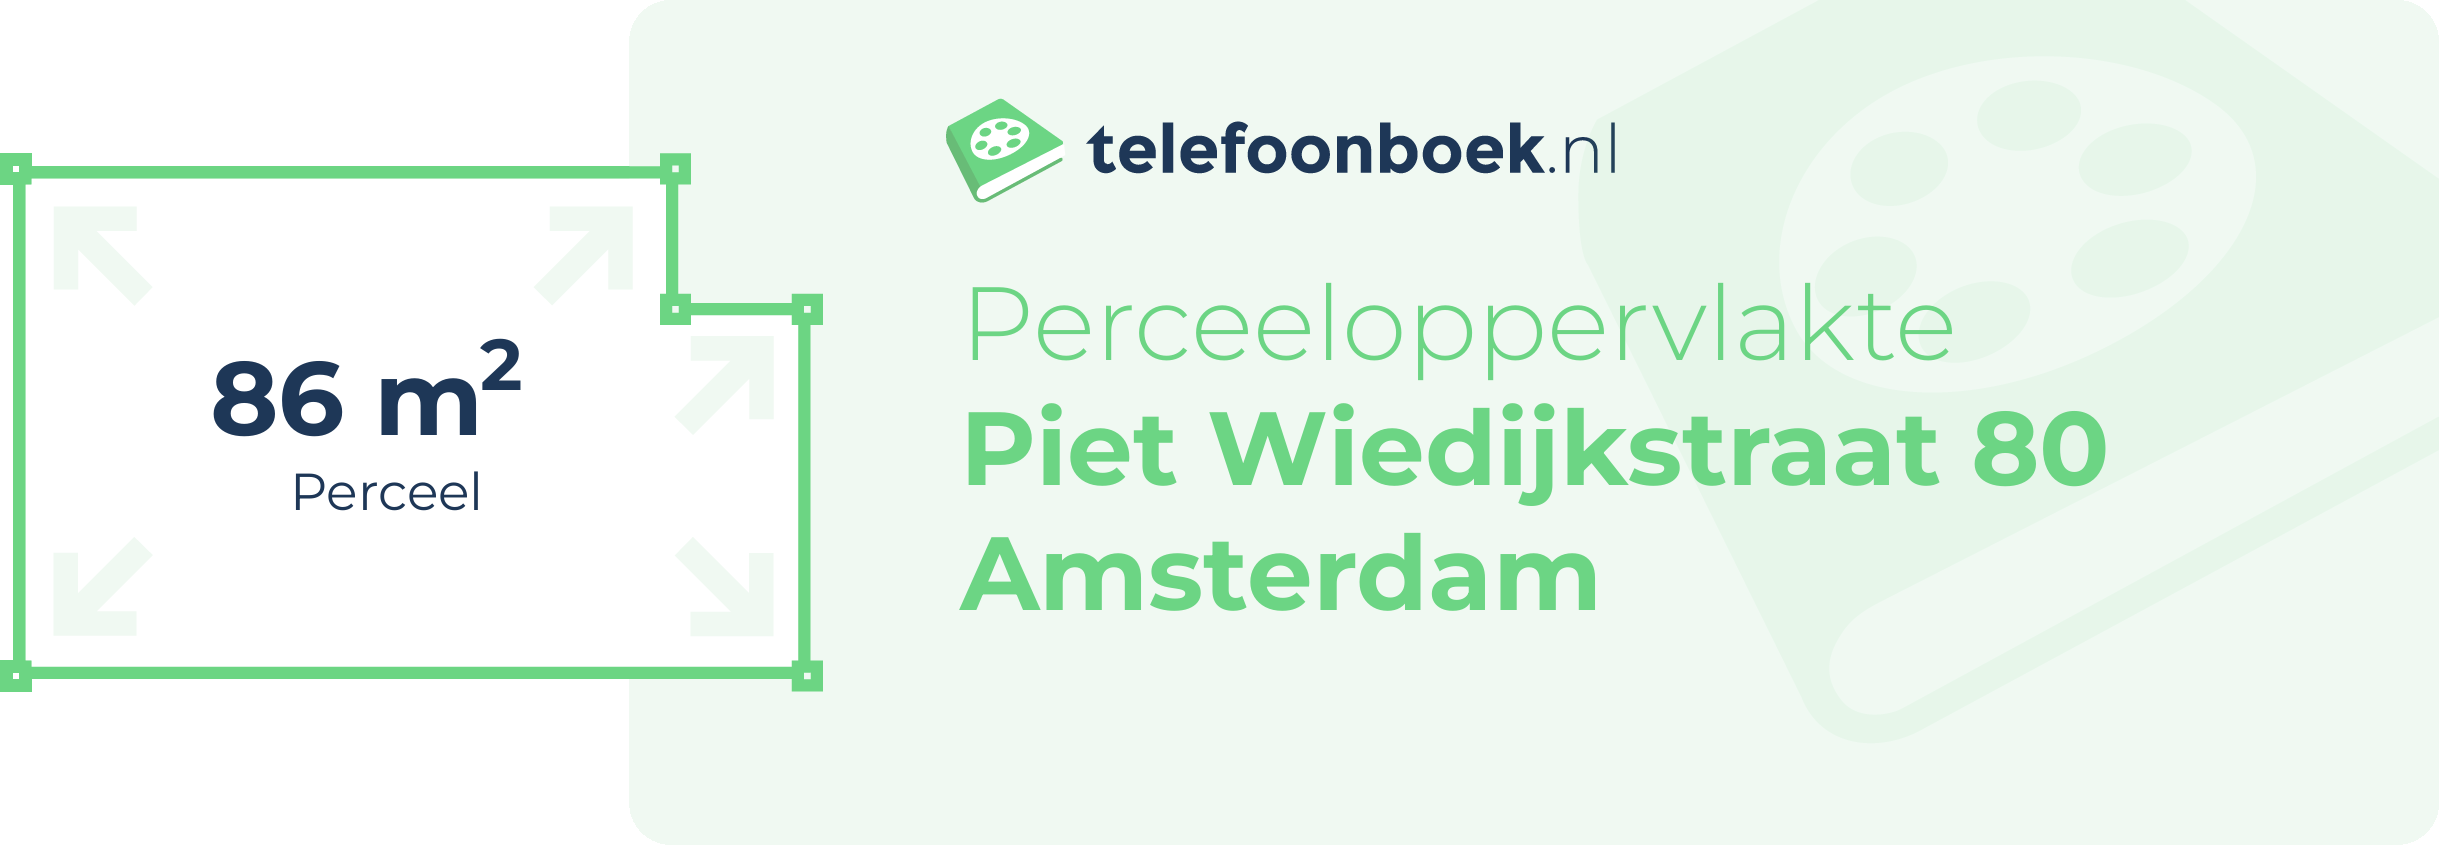 Perceeloppervlakte Piet Wiedijkstraat 80 Amsterdam